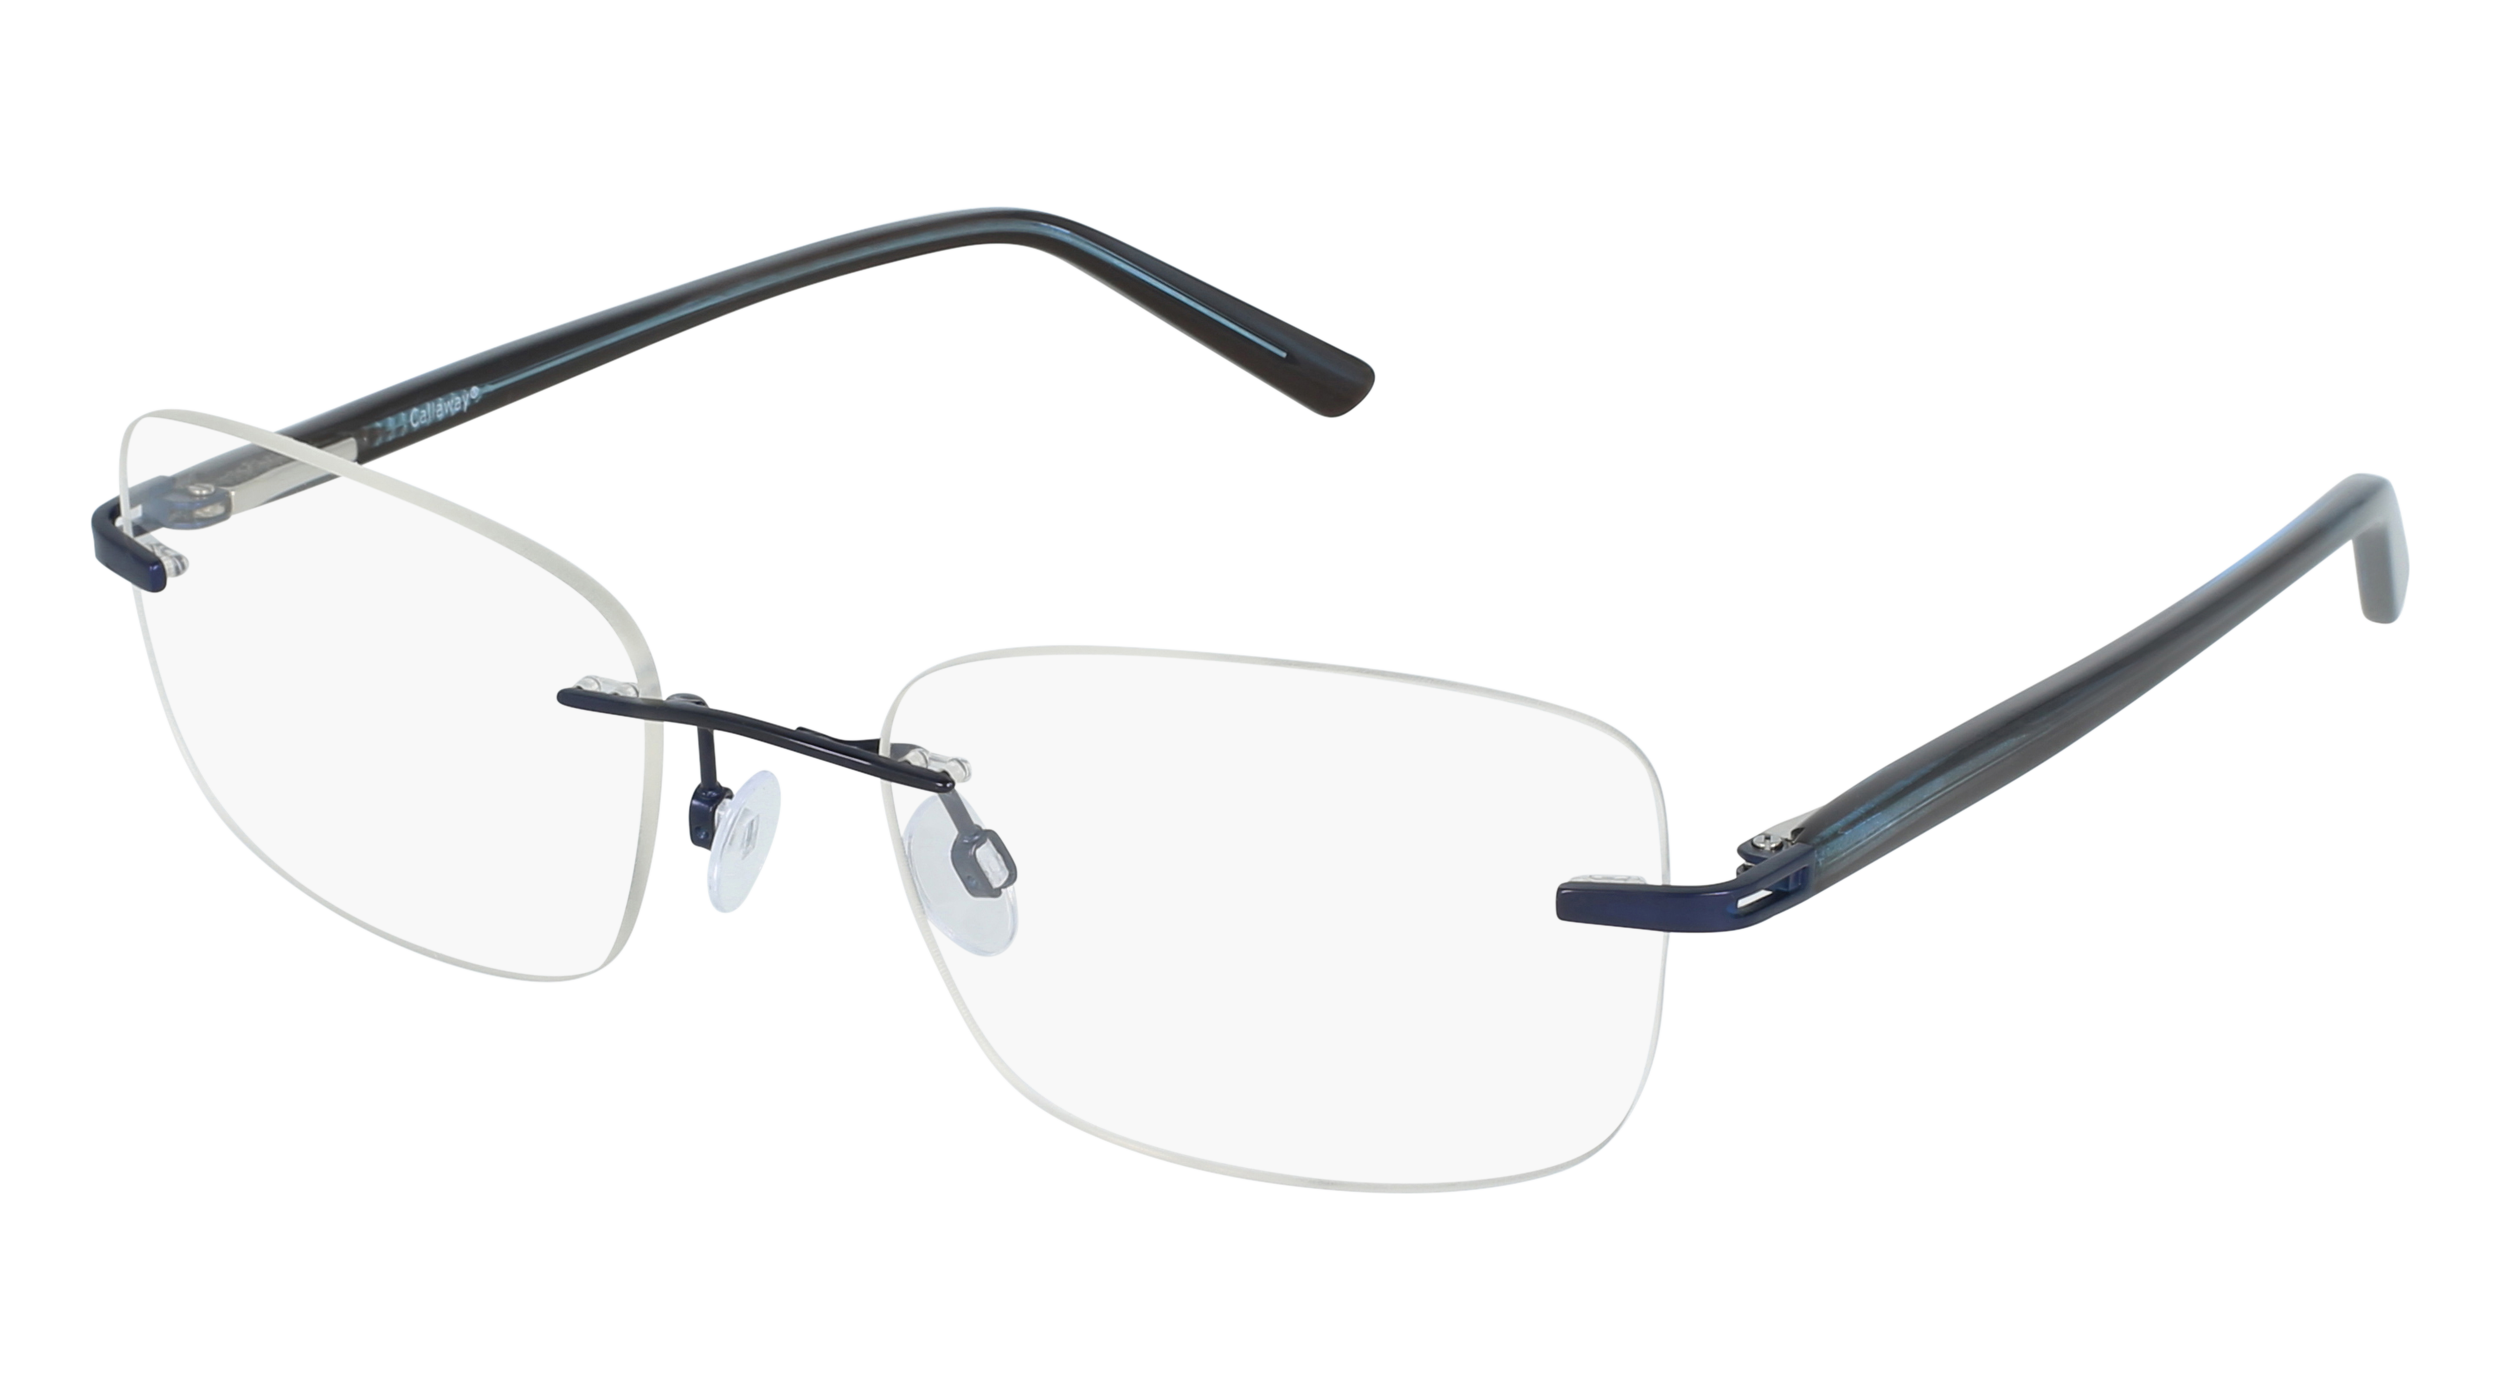 C C 18 men's eyeglasses (from the side)